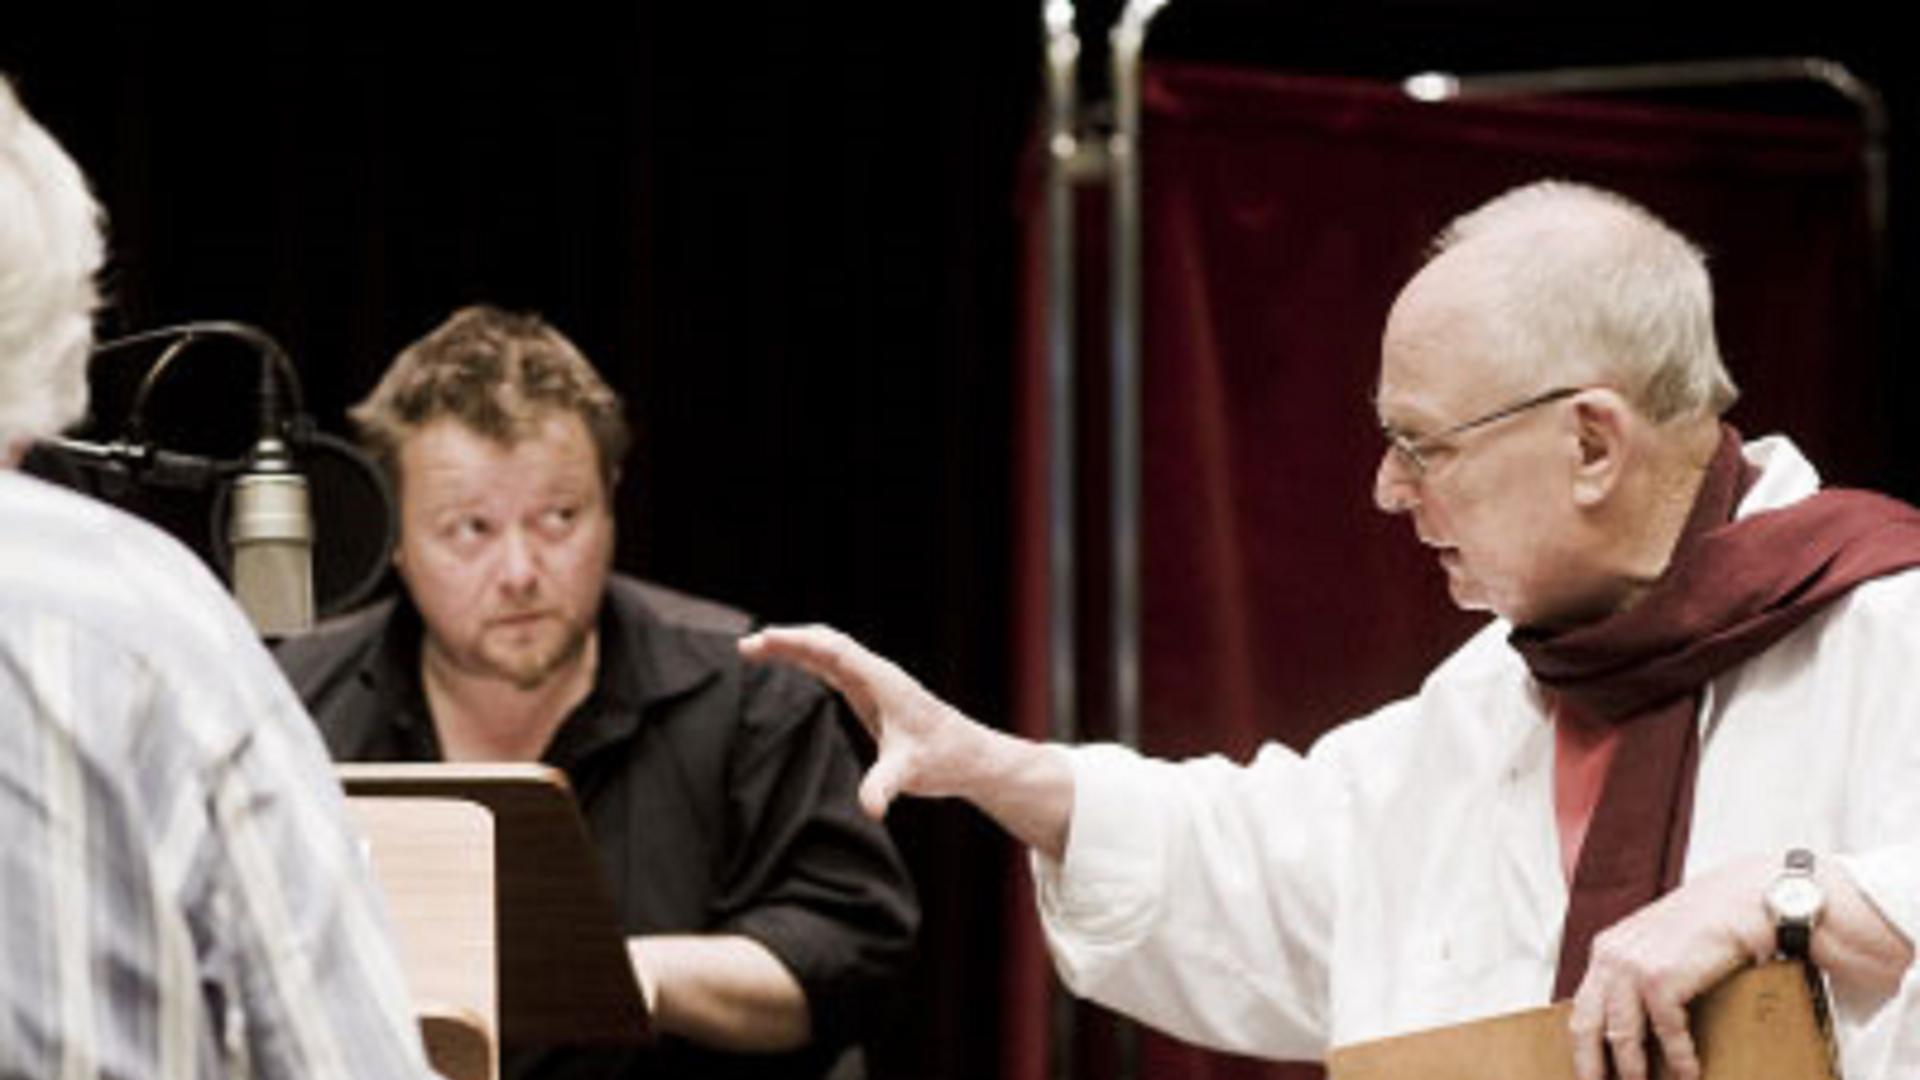 Darsteller Martin Engler und Regisseur Jörg Jannings (v.l.) bei der Aufnahme von "Souterrain".